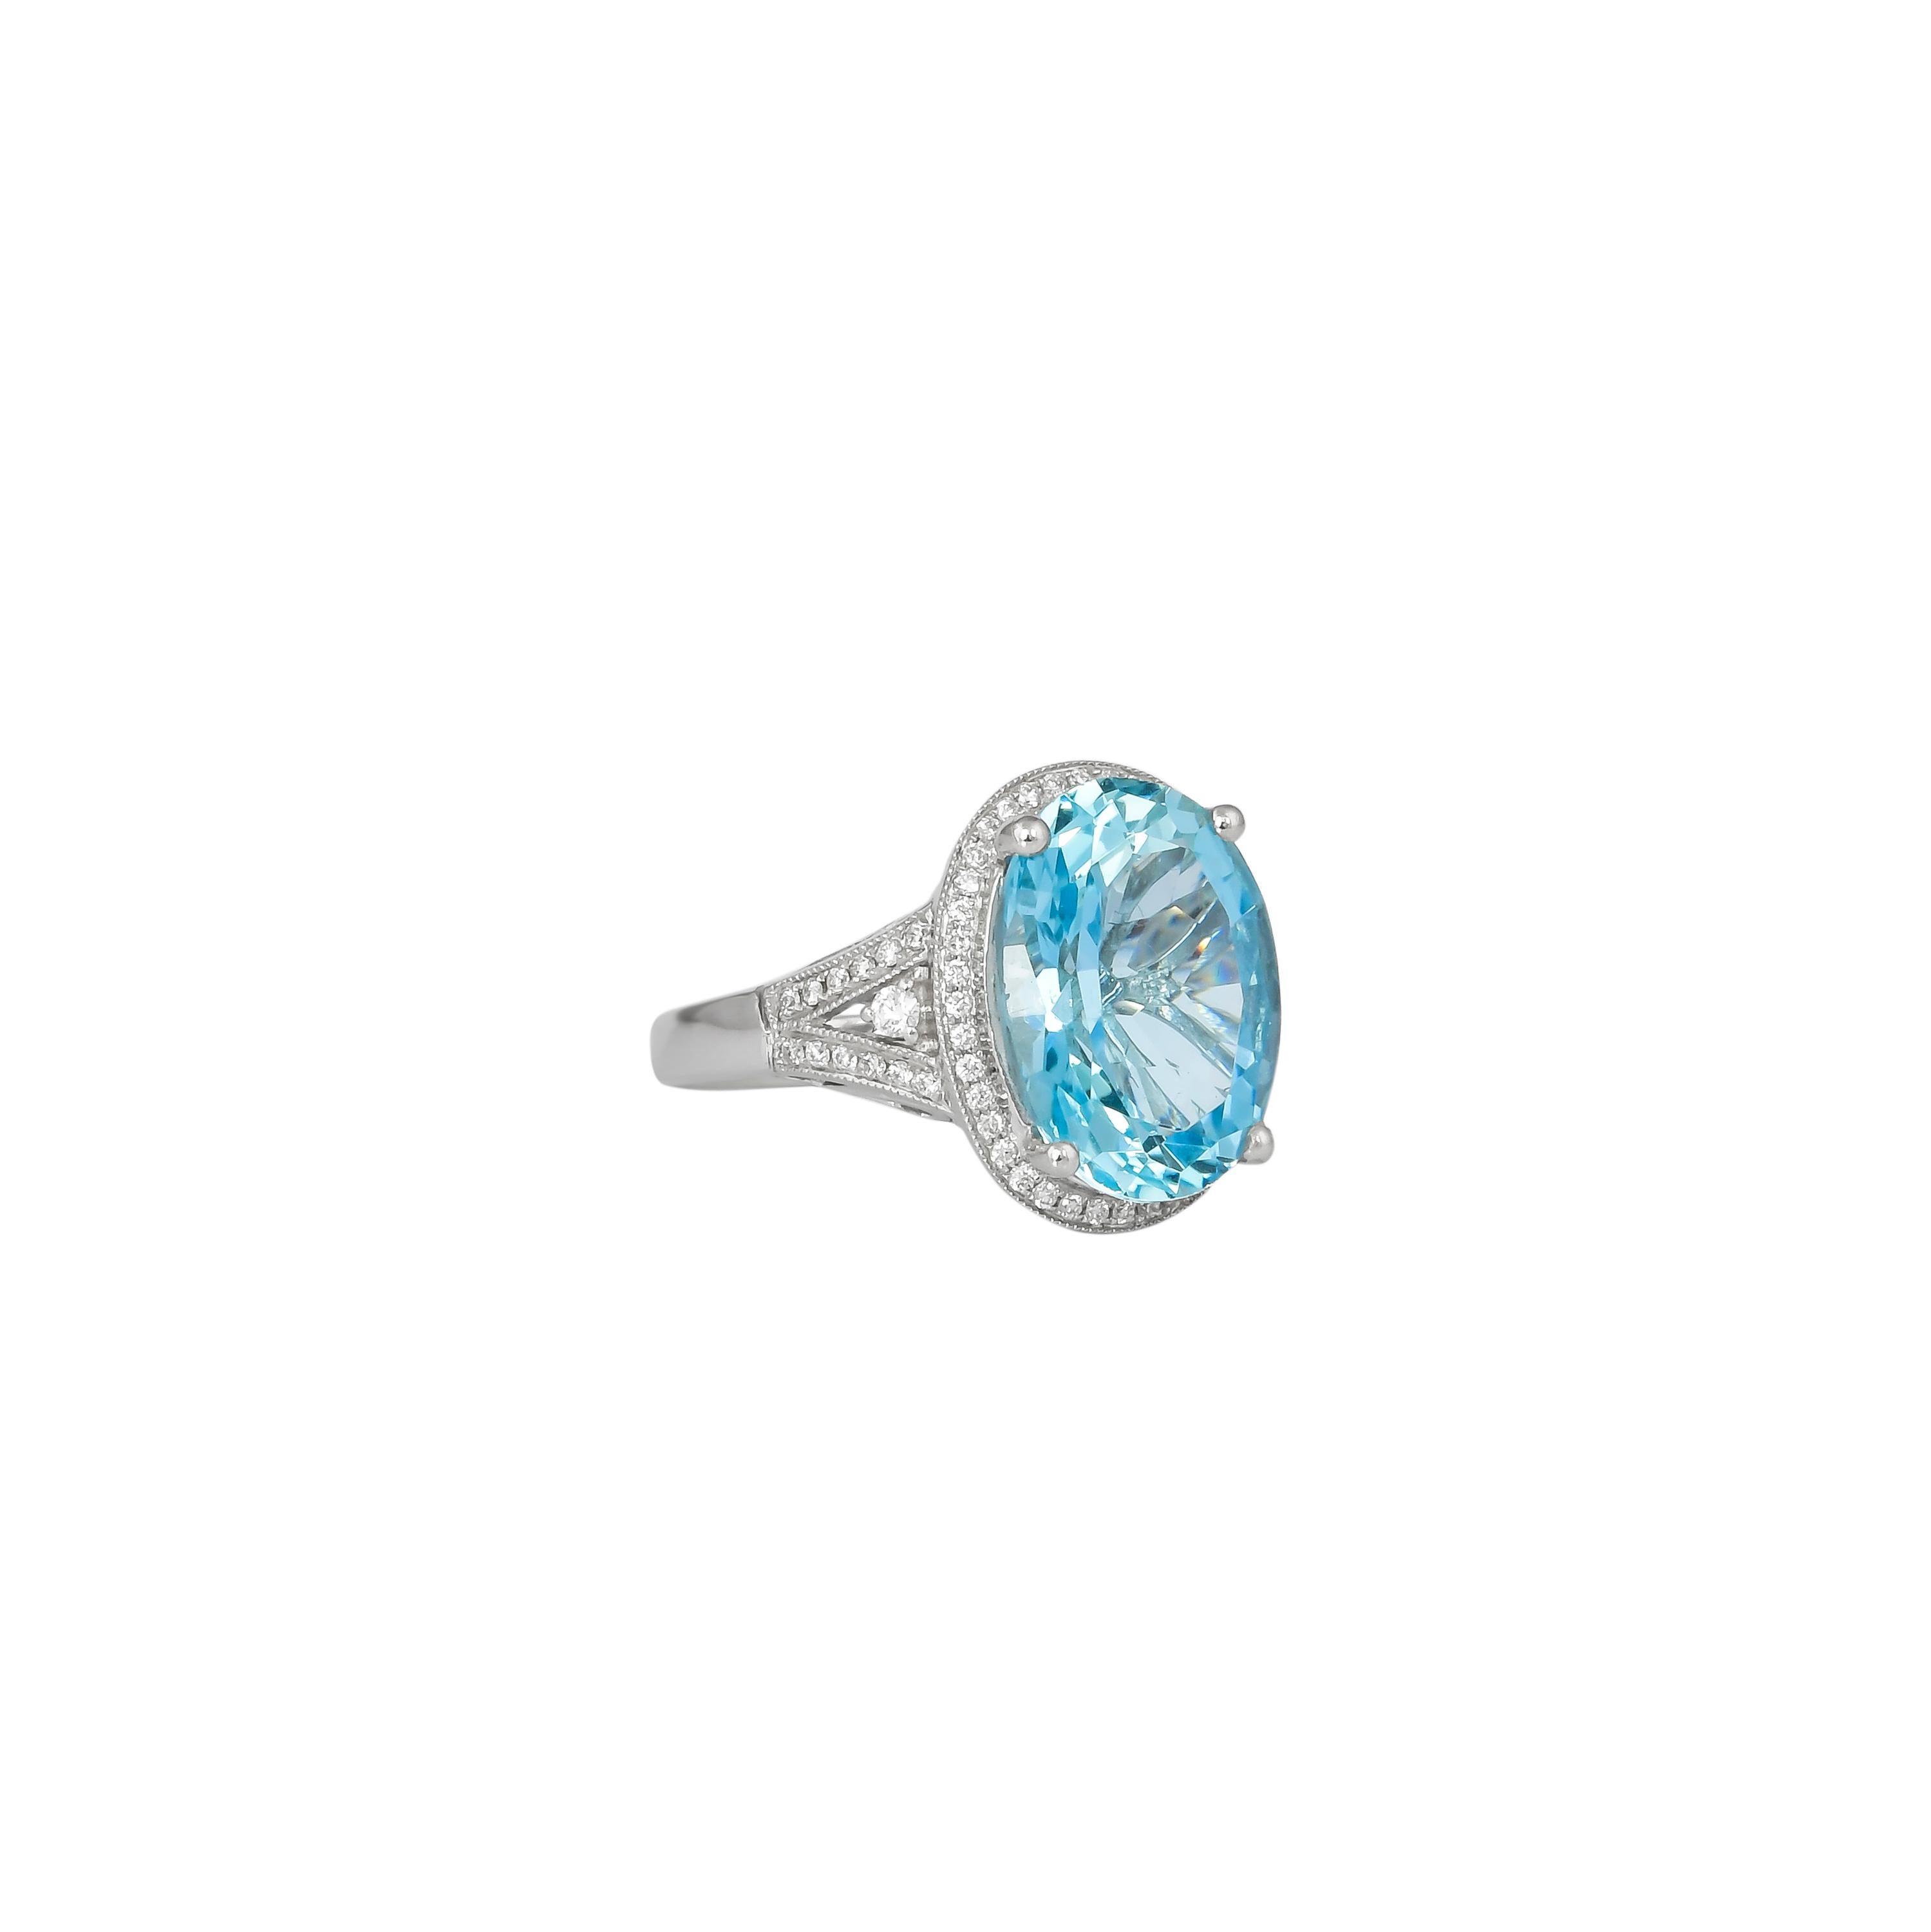 Diese Kollektion bietet eine Reihe von Aquamarinen mit einem eisblauen Farbton, der so cool ist, wie er nur sein kann! Diese mit Diamanten besetzten Ringe sind in Weiß gehalten und wirken klassisch und elegant. 

Klassischer Aquamarinring aus 18